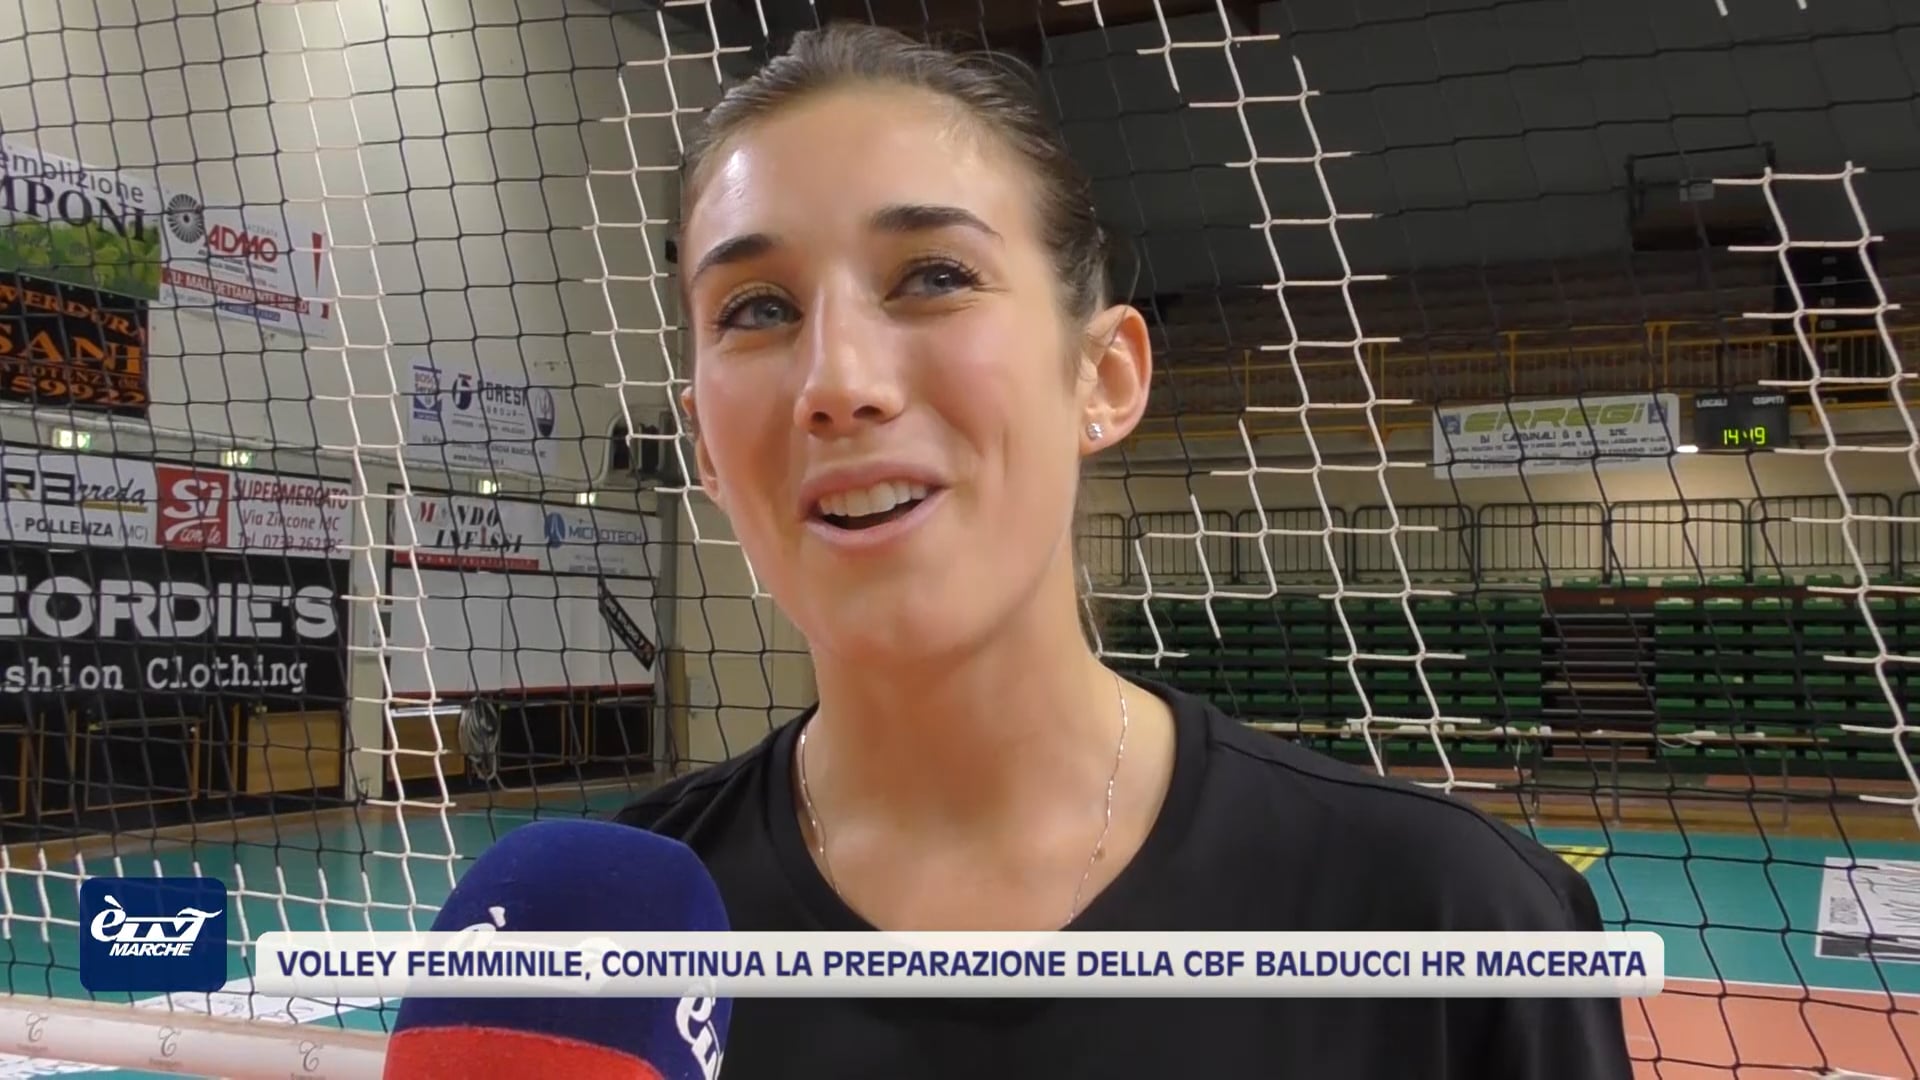 Volley Femminile, continua la preparazione della CBF Balducci HR Macerata 